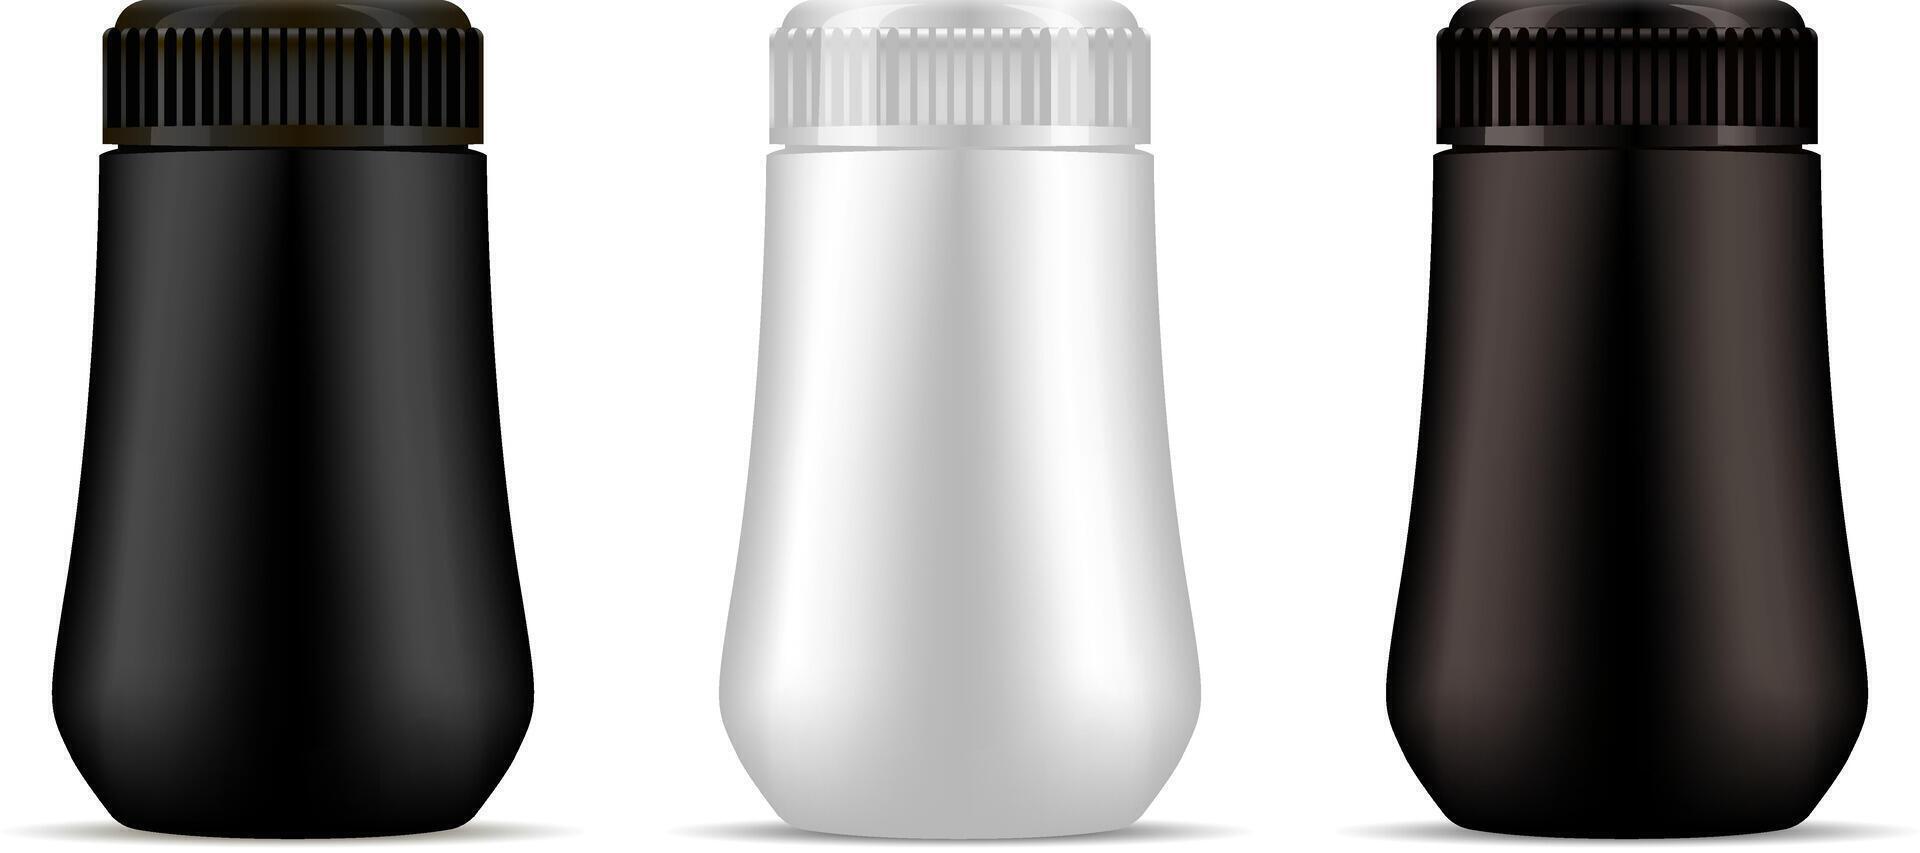 zwart, bruin en wit plastic professioneel kunstmatig fles model. schoonheidsmiddelen pakket vector illustratie. hoog kwaliteit ontwerp Product, geïsoleerd.